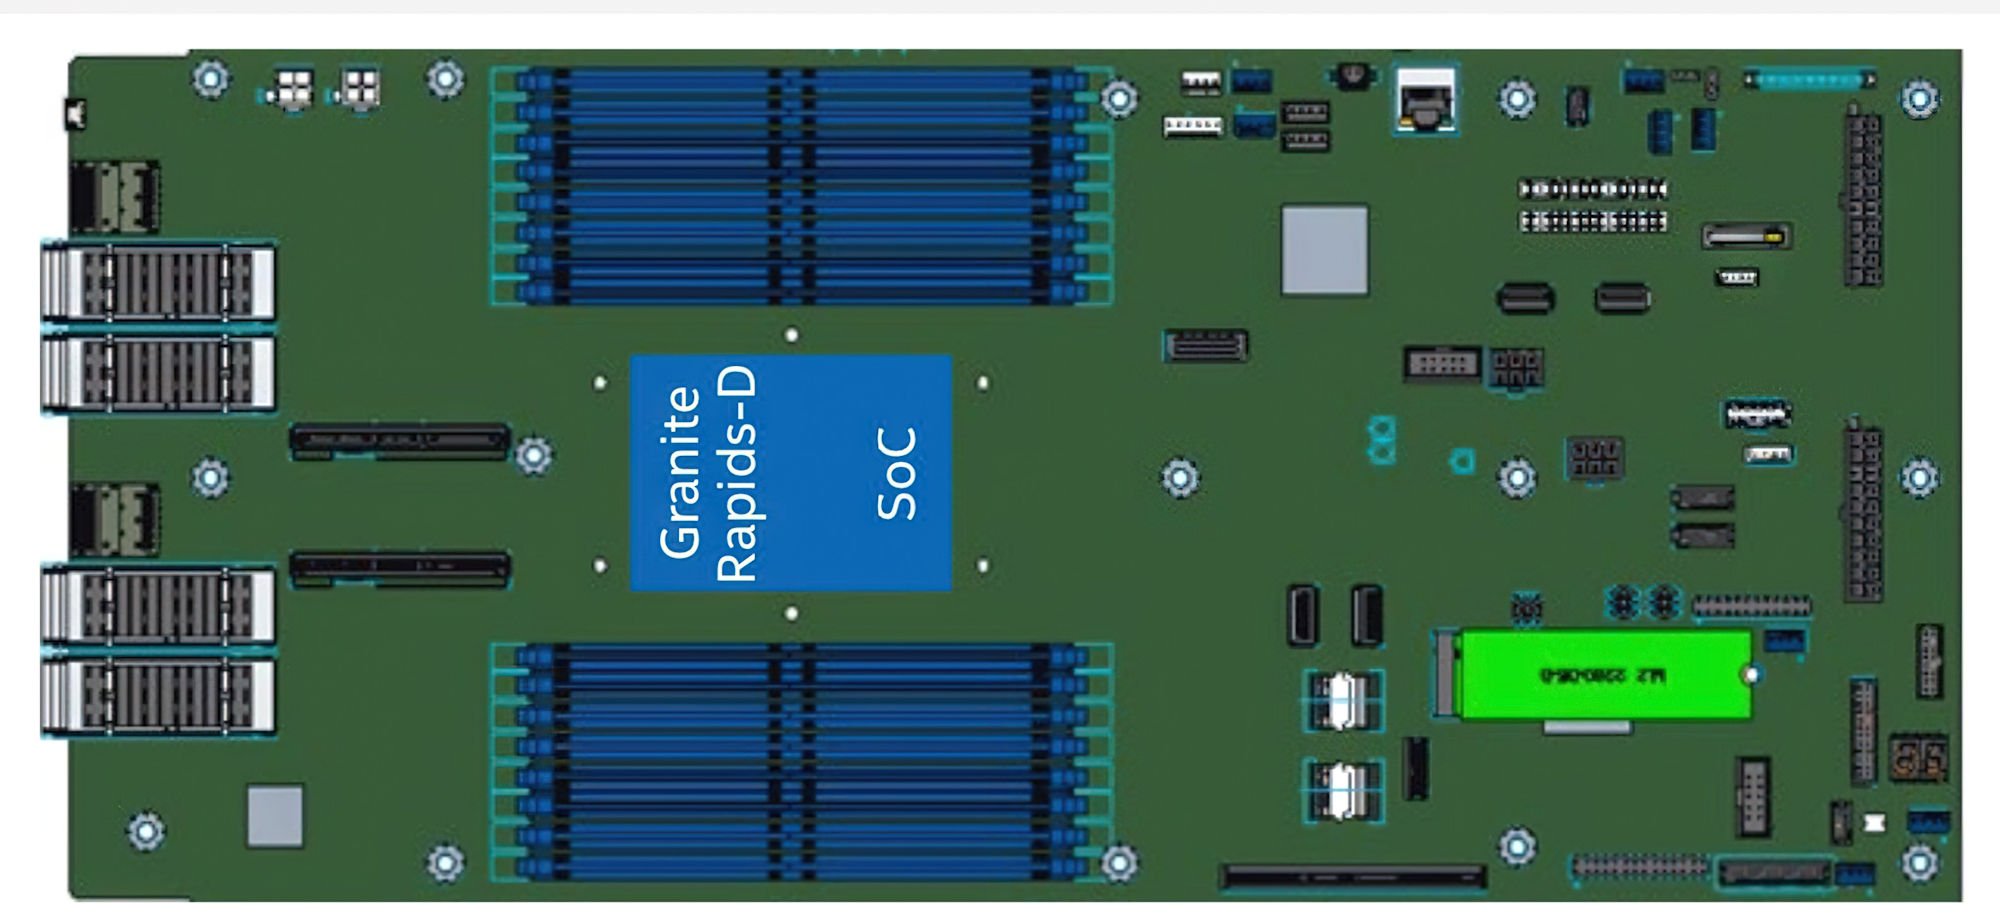 Intel Xeon Granite Rapids-D İki Farklı Modelde Sunulacak